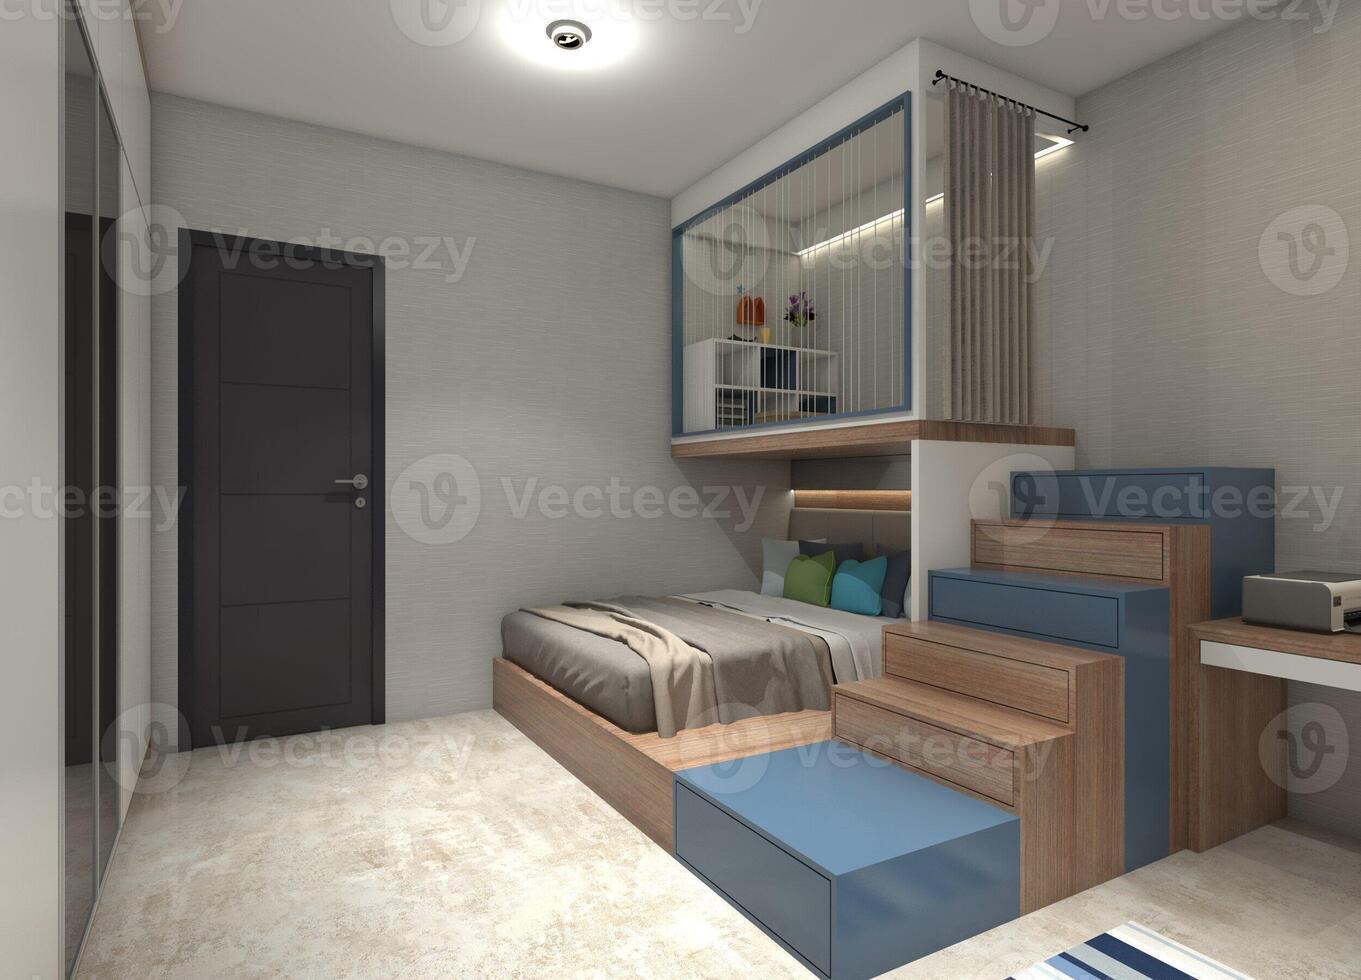 kinderen' slaapkamer ontwerp met mezzanine en trappenhuis gedeelte, 3d illustratie foto